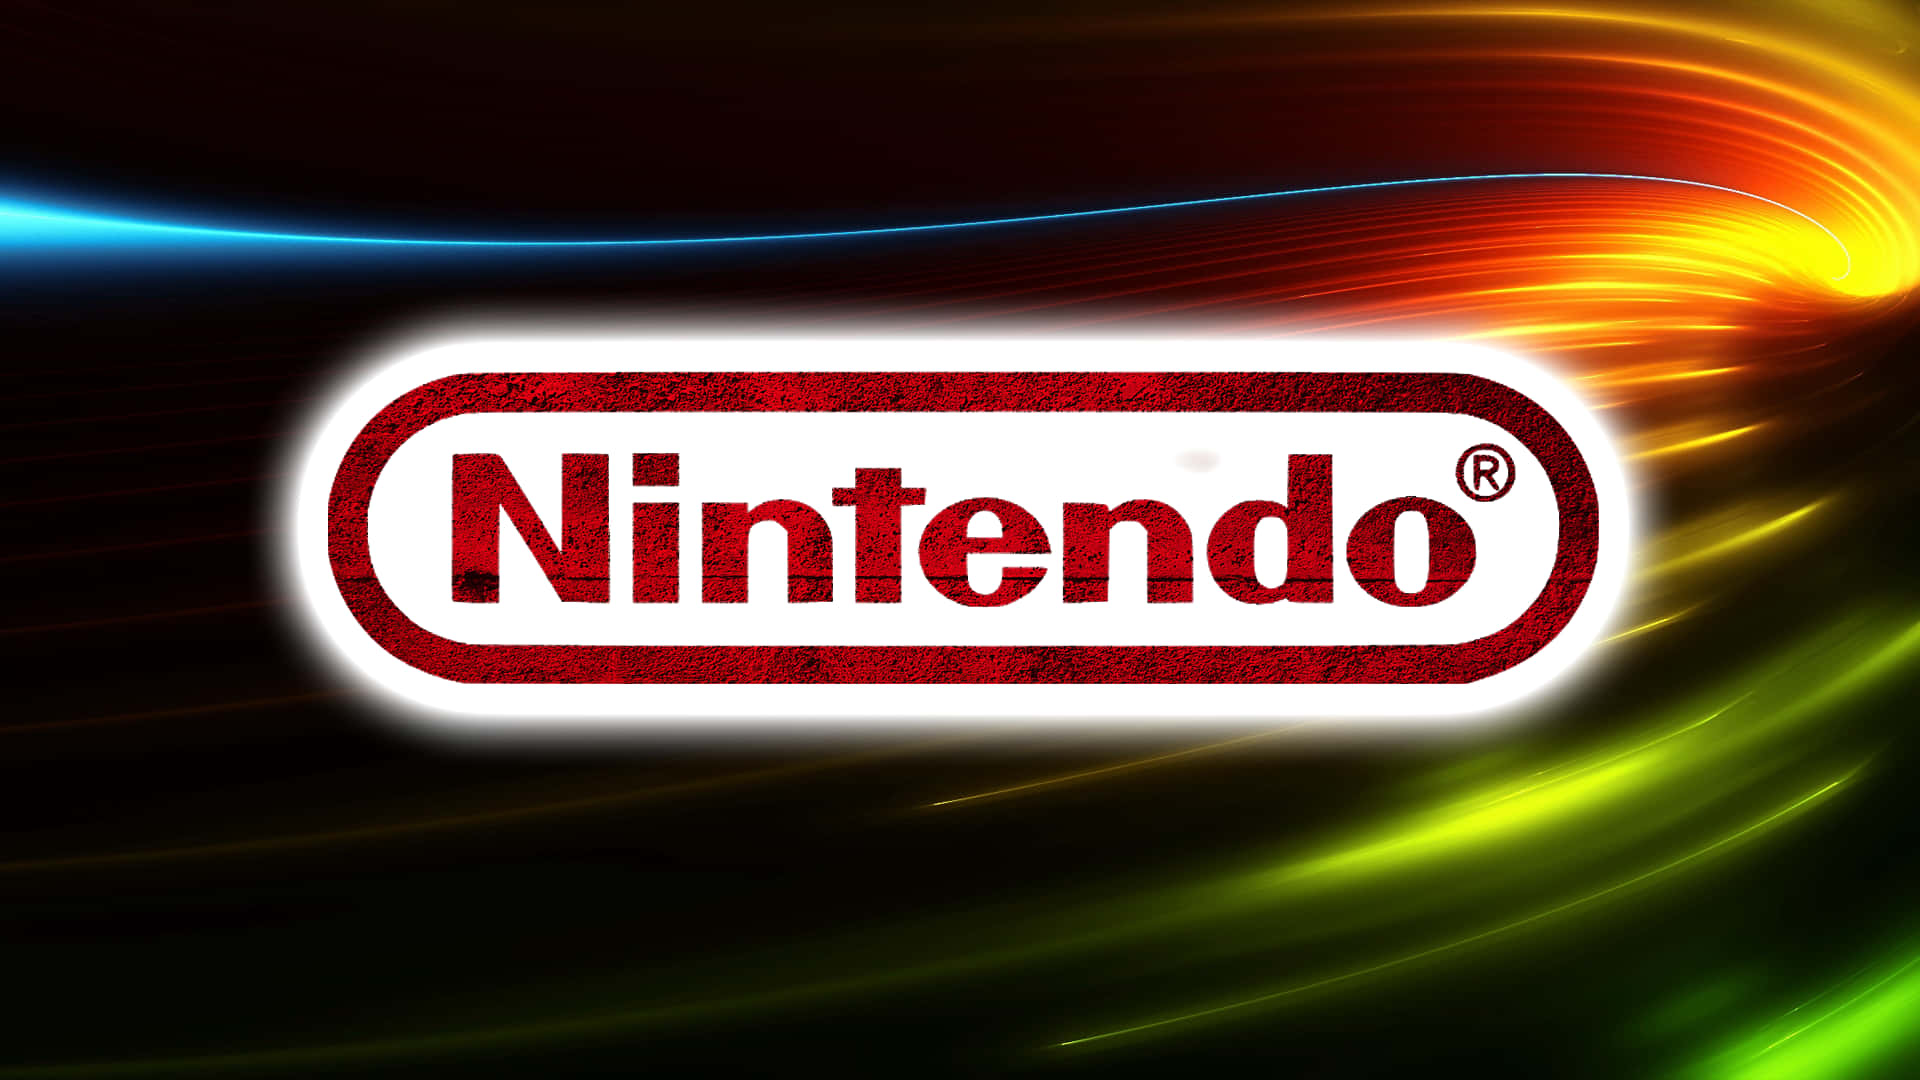 Nyden Optimal Spiloplevelse Med Nintendo Med Fantastisk Computer Eller Mobil Baggrundsbilleder.